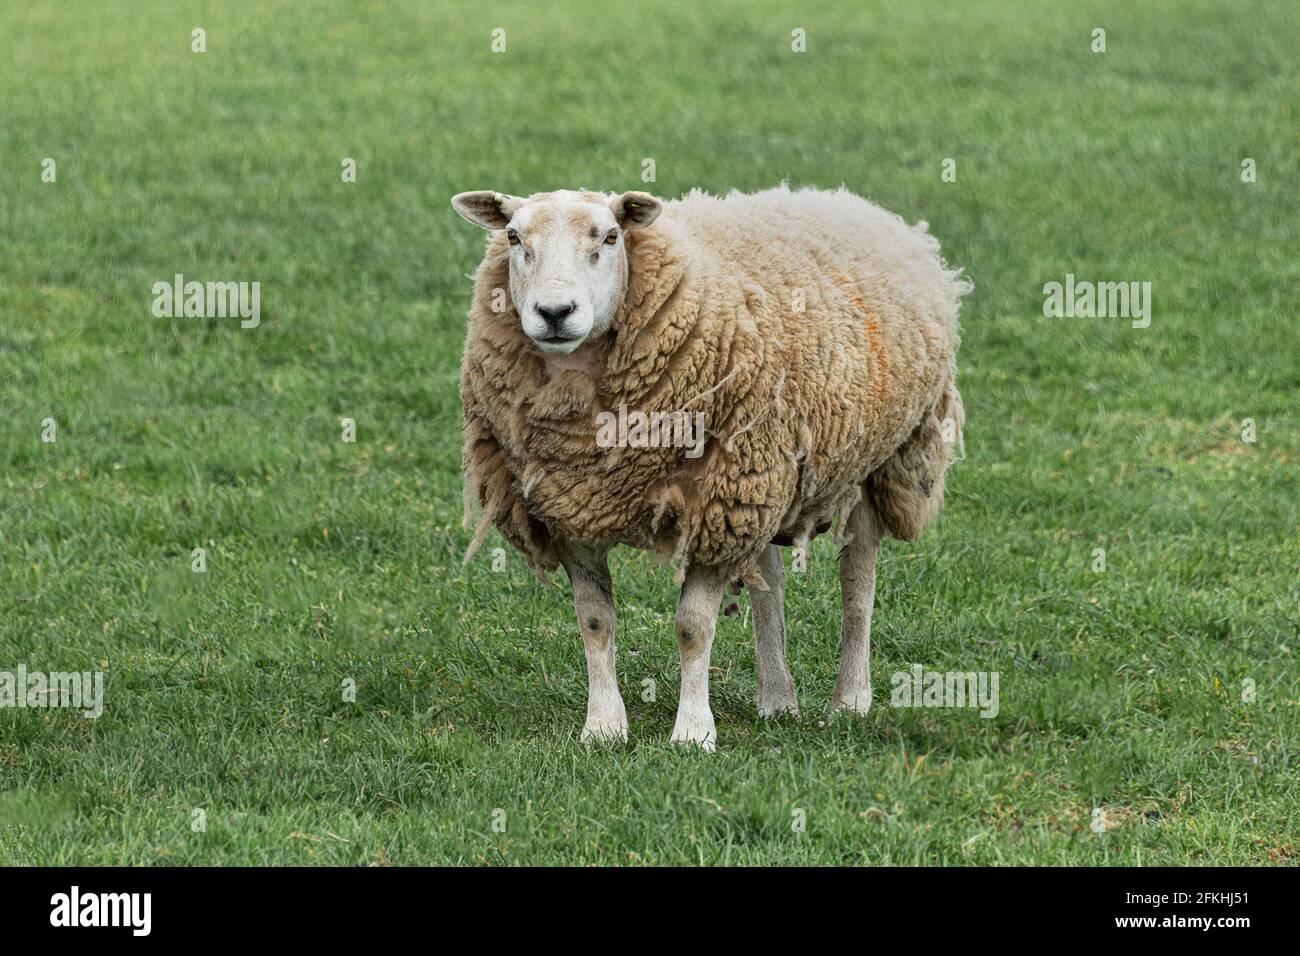 Ein ausgewachsenes Schaf, das auf einem Feld auf dem steht Gras.Es hat einen langen wolligen Mantel und starrt direkt Vorwärts Stockfoto